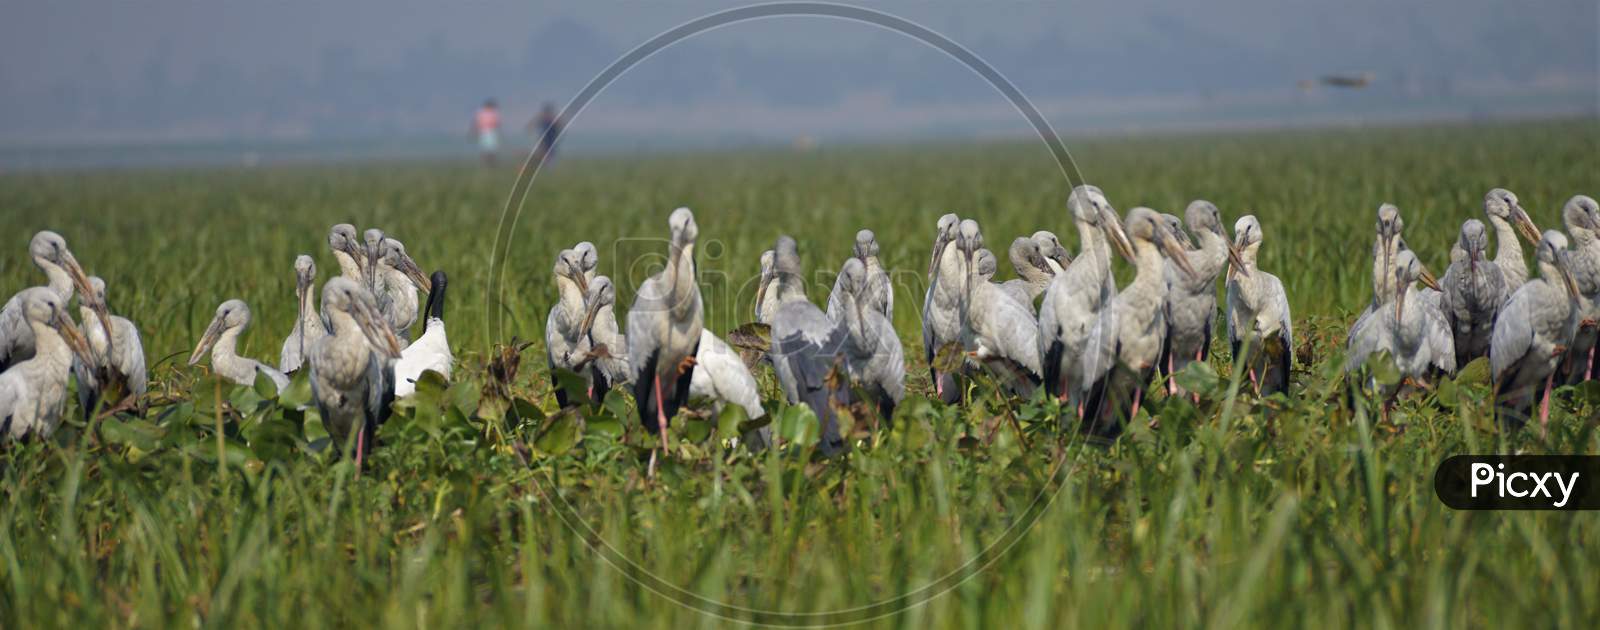 A flock of Asian openbill stork